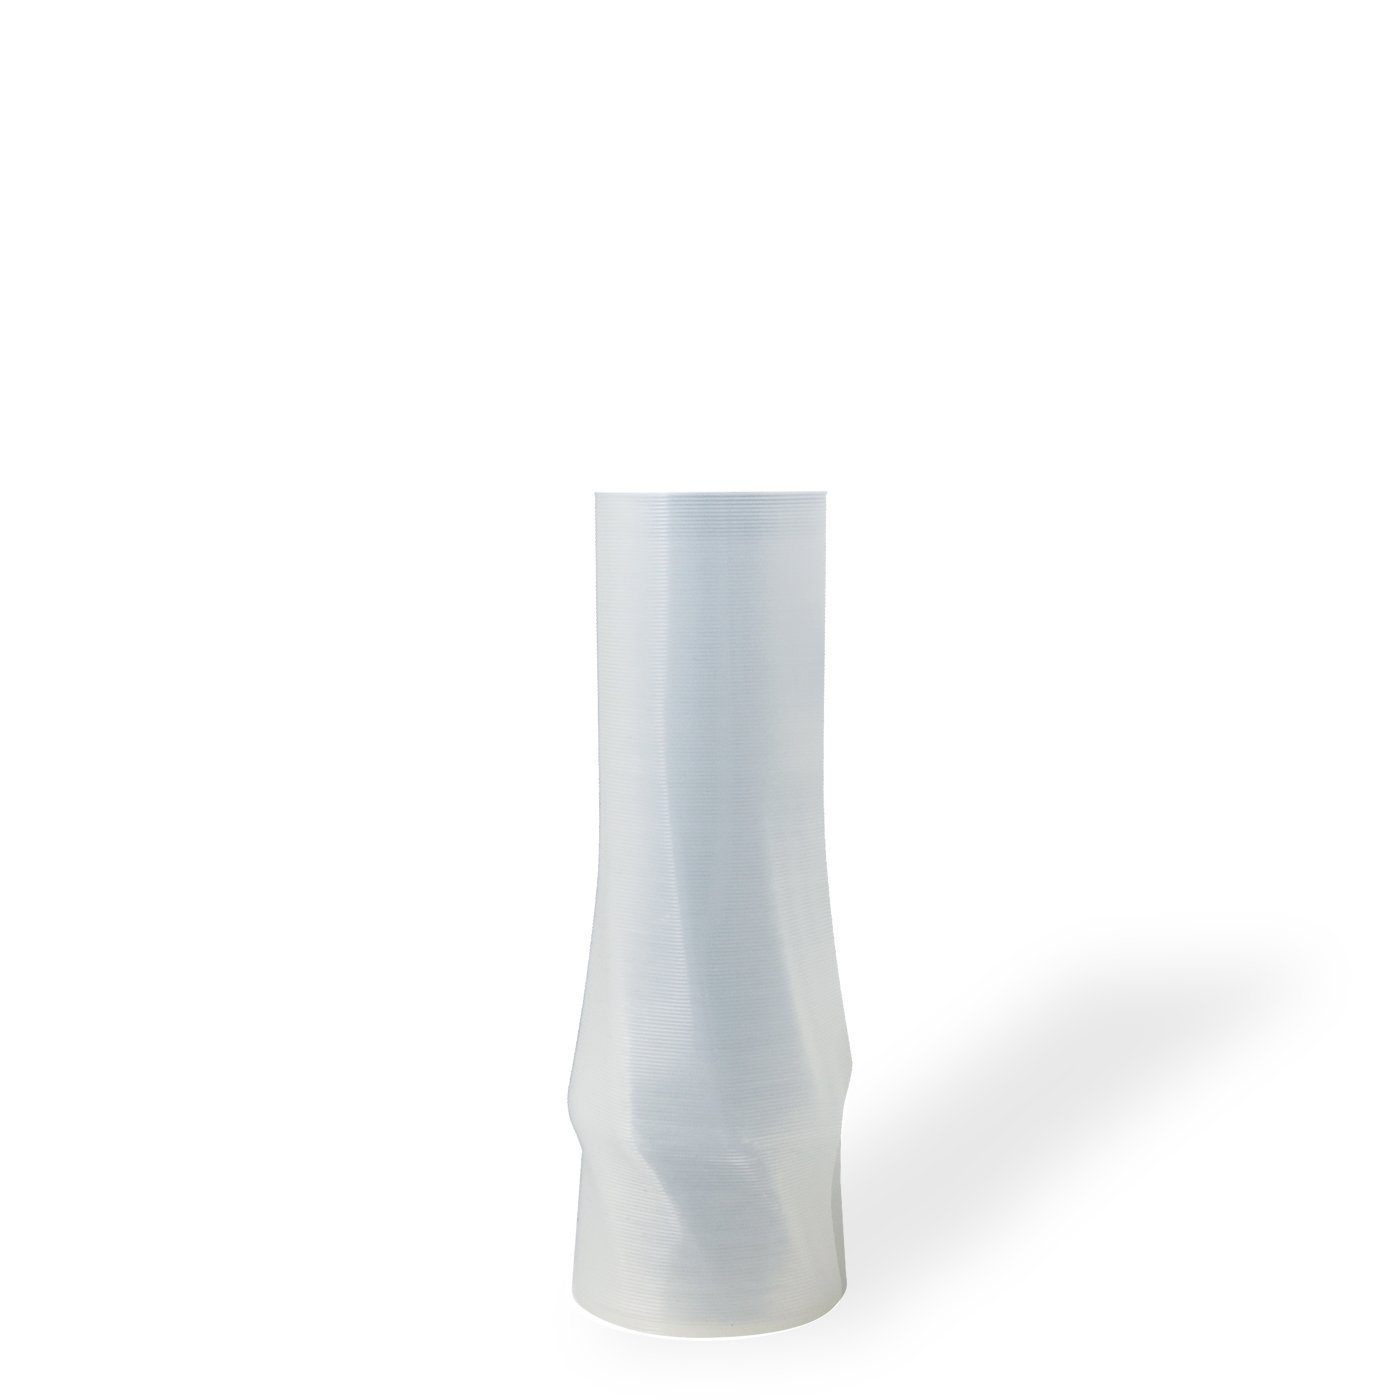 Shapes - Decorations Dekovase the vase - circle (deco), 3D Vasen, viele Farben, 100% 3D-Druck (Einzelmodell, 1 Vase), Durchsichtig; Leichte Struktur innerhalb des Materials (Rillung) Weiß